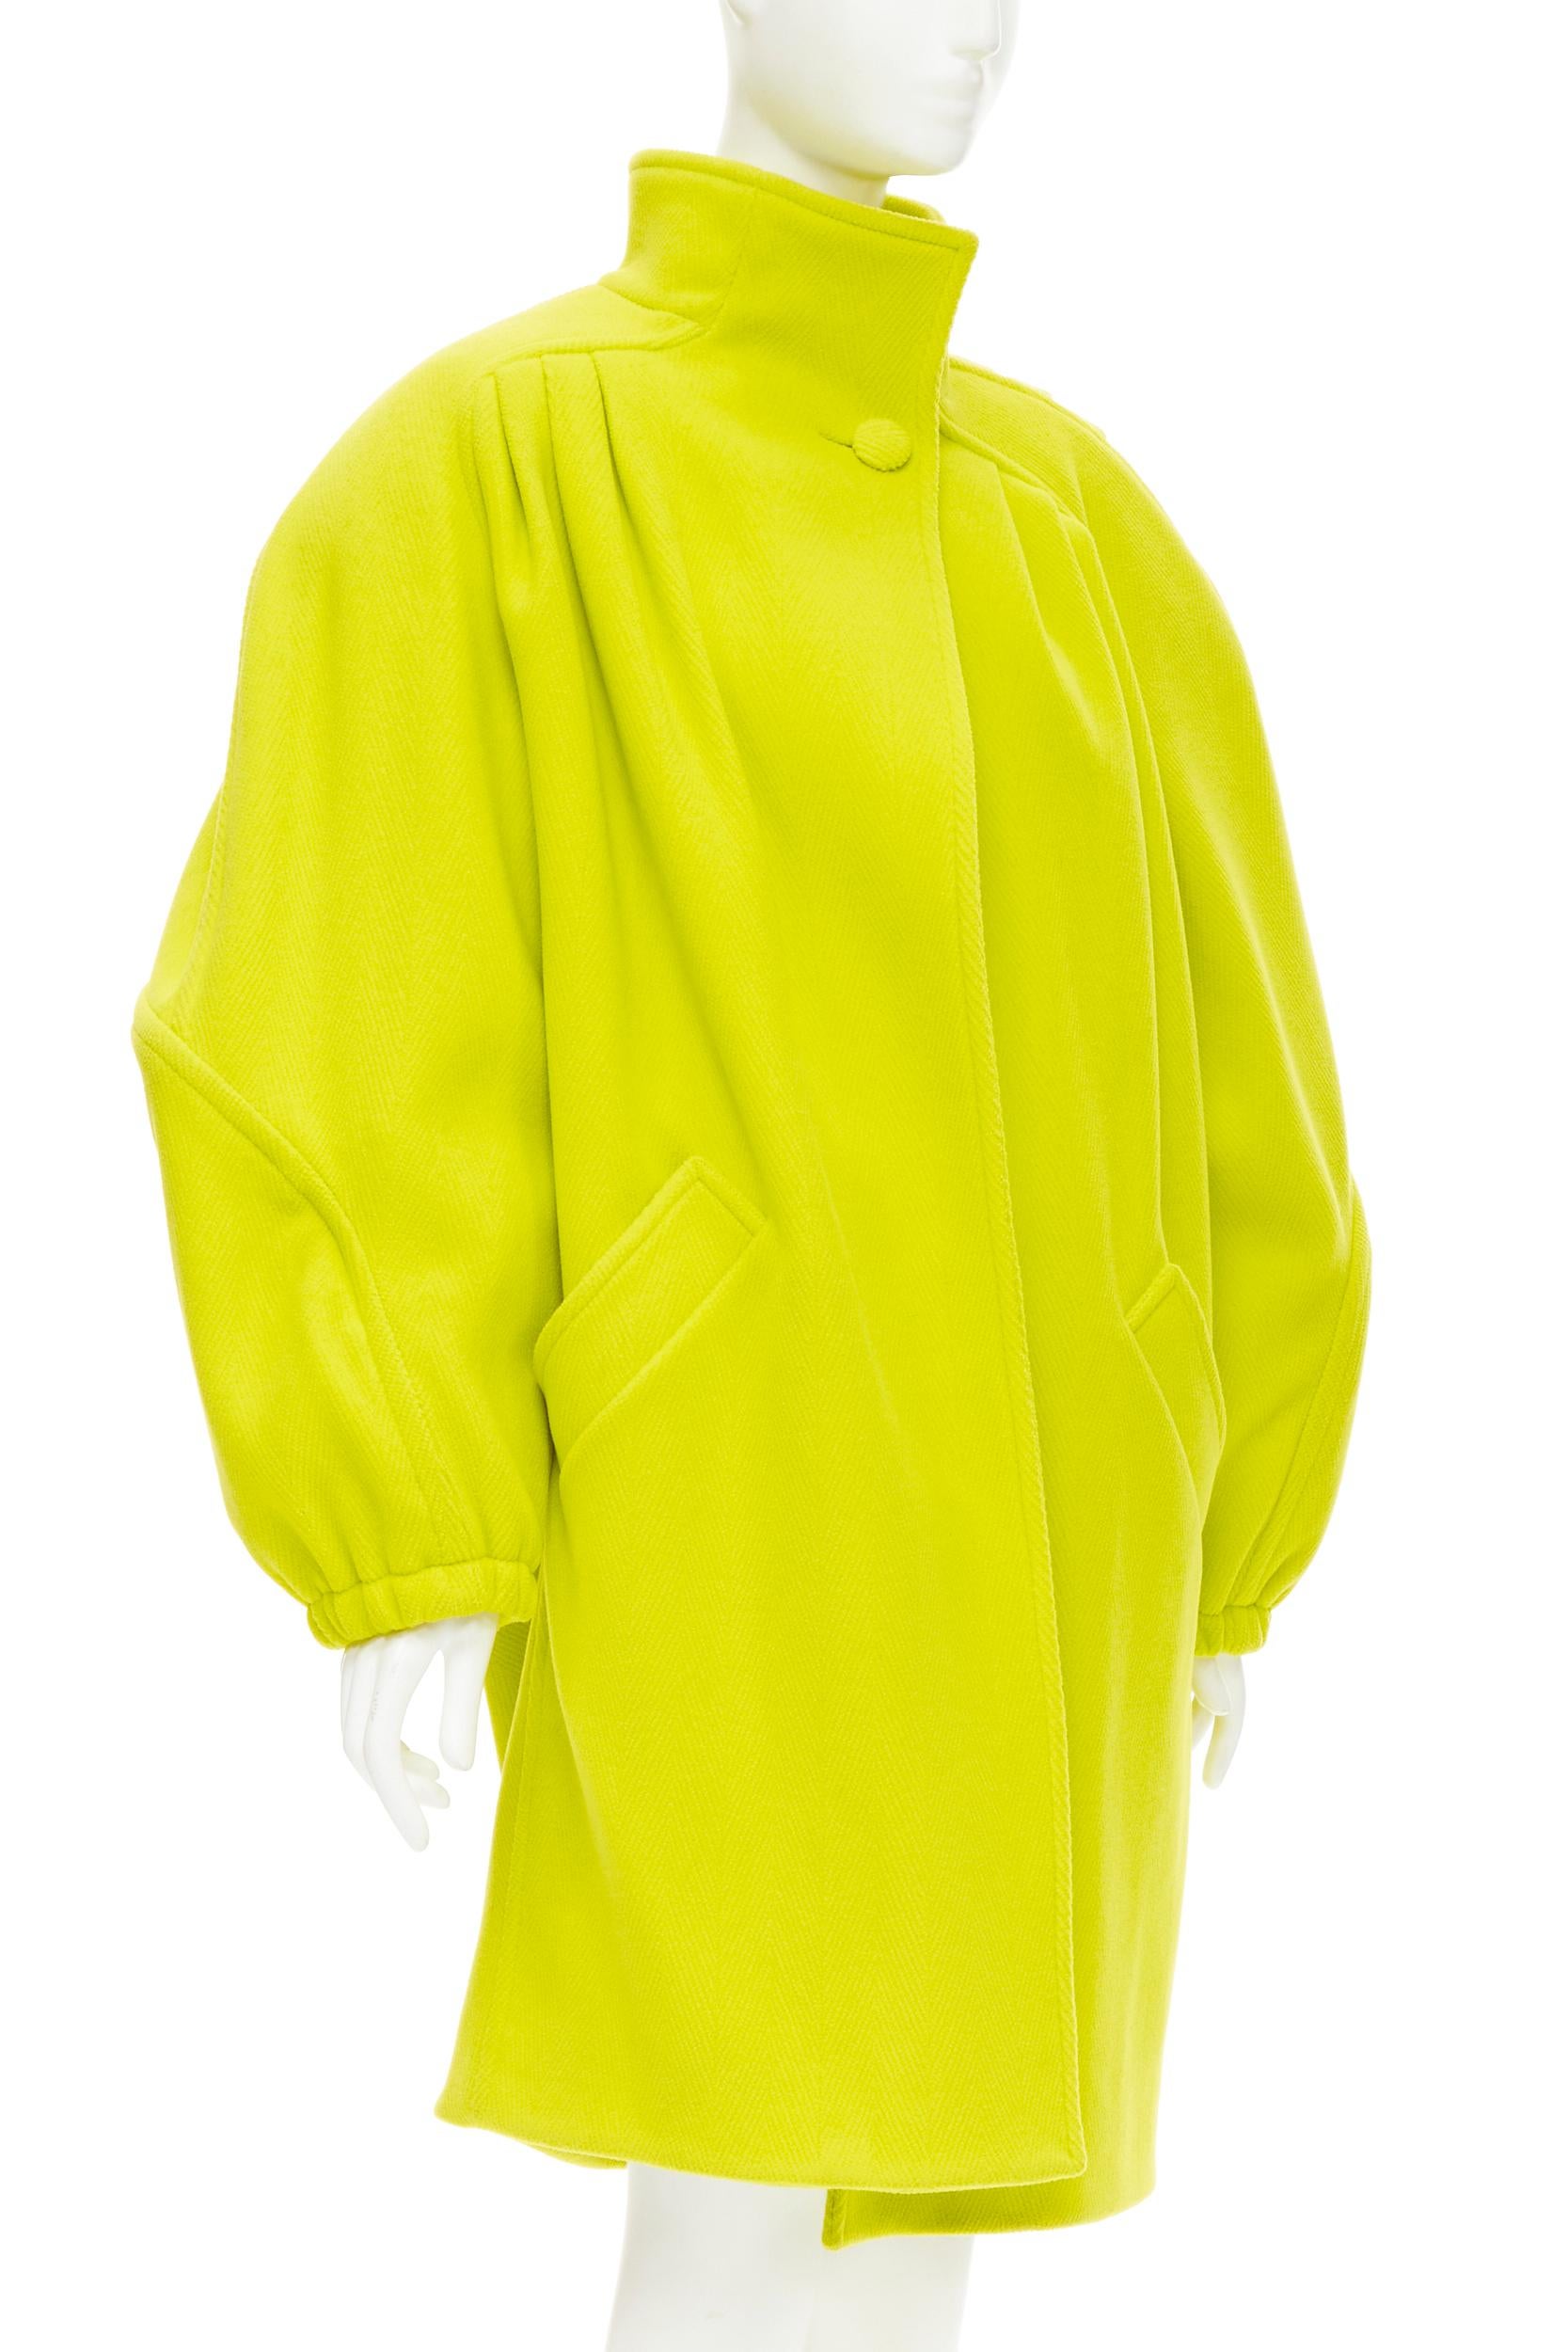 Jaune BALENCIAGA - Manteau cocon surdimensionné en laine jaune matelassé, taille FR34, défilé 2019 en vente